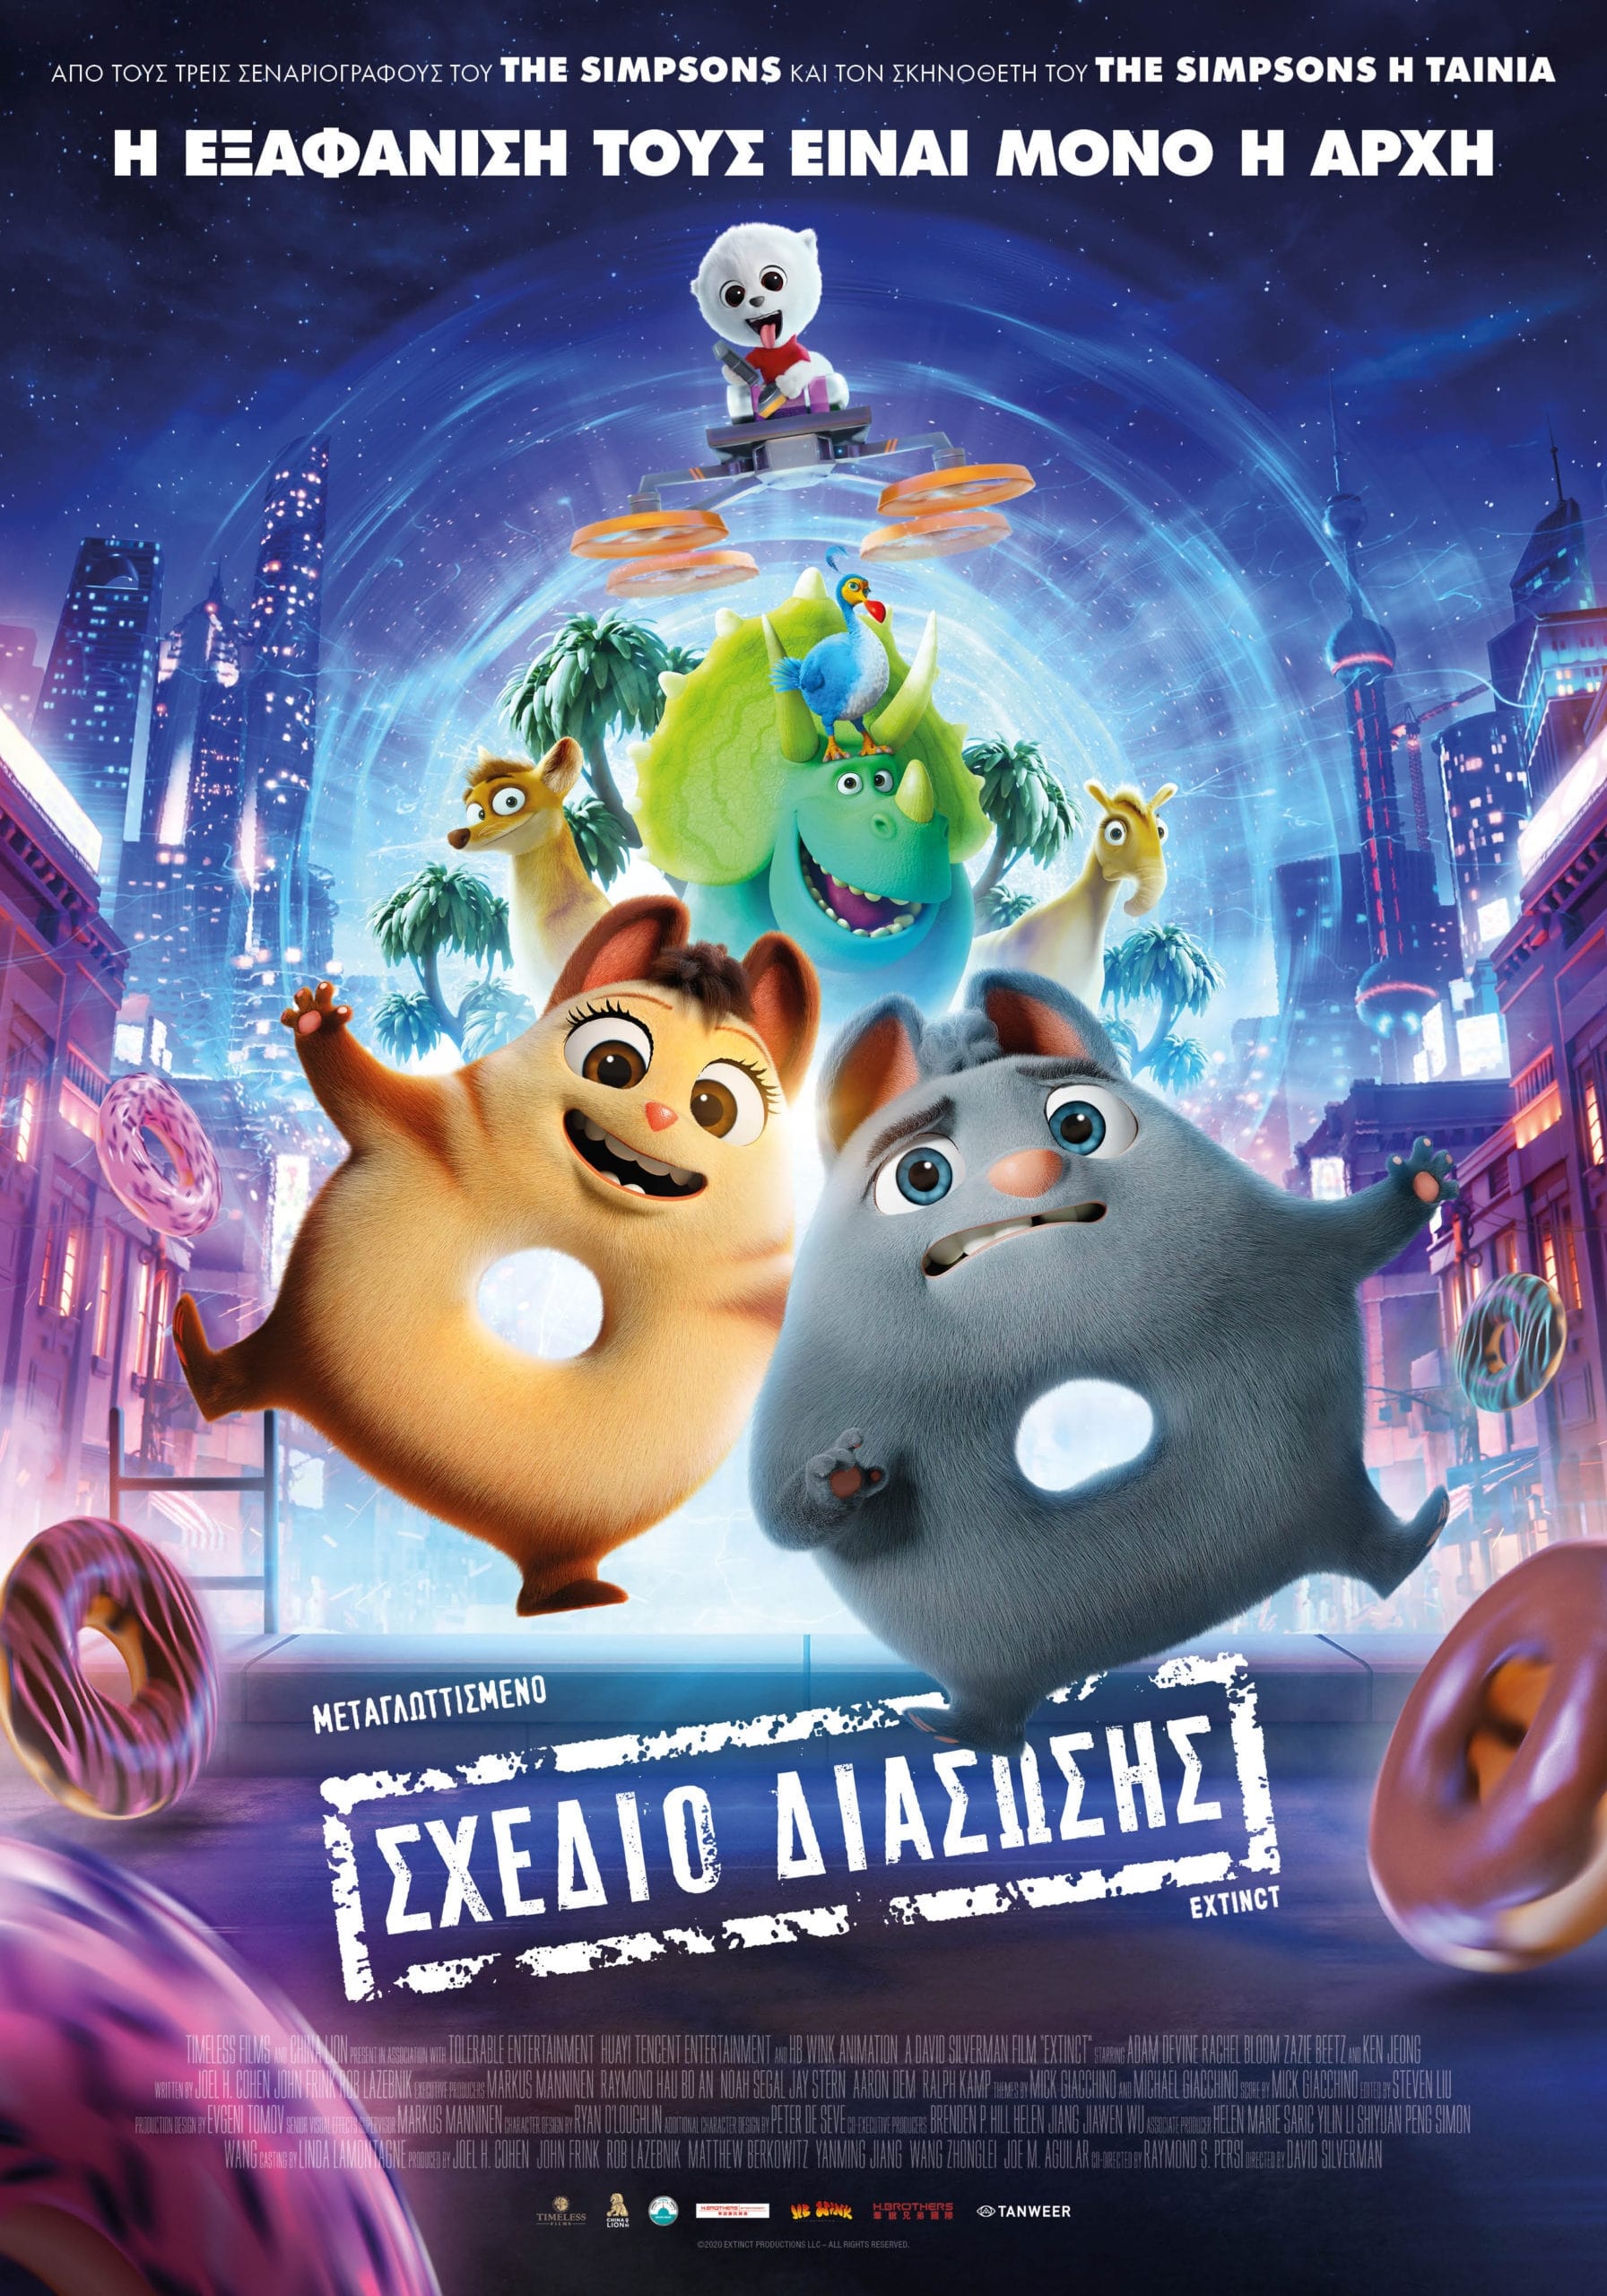 Poster for the movie "Σχέδιο Διάσωσης"